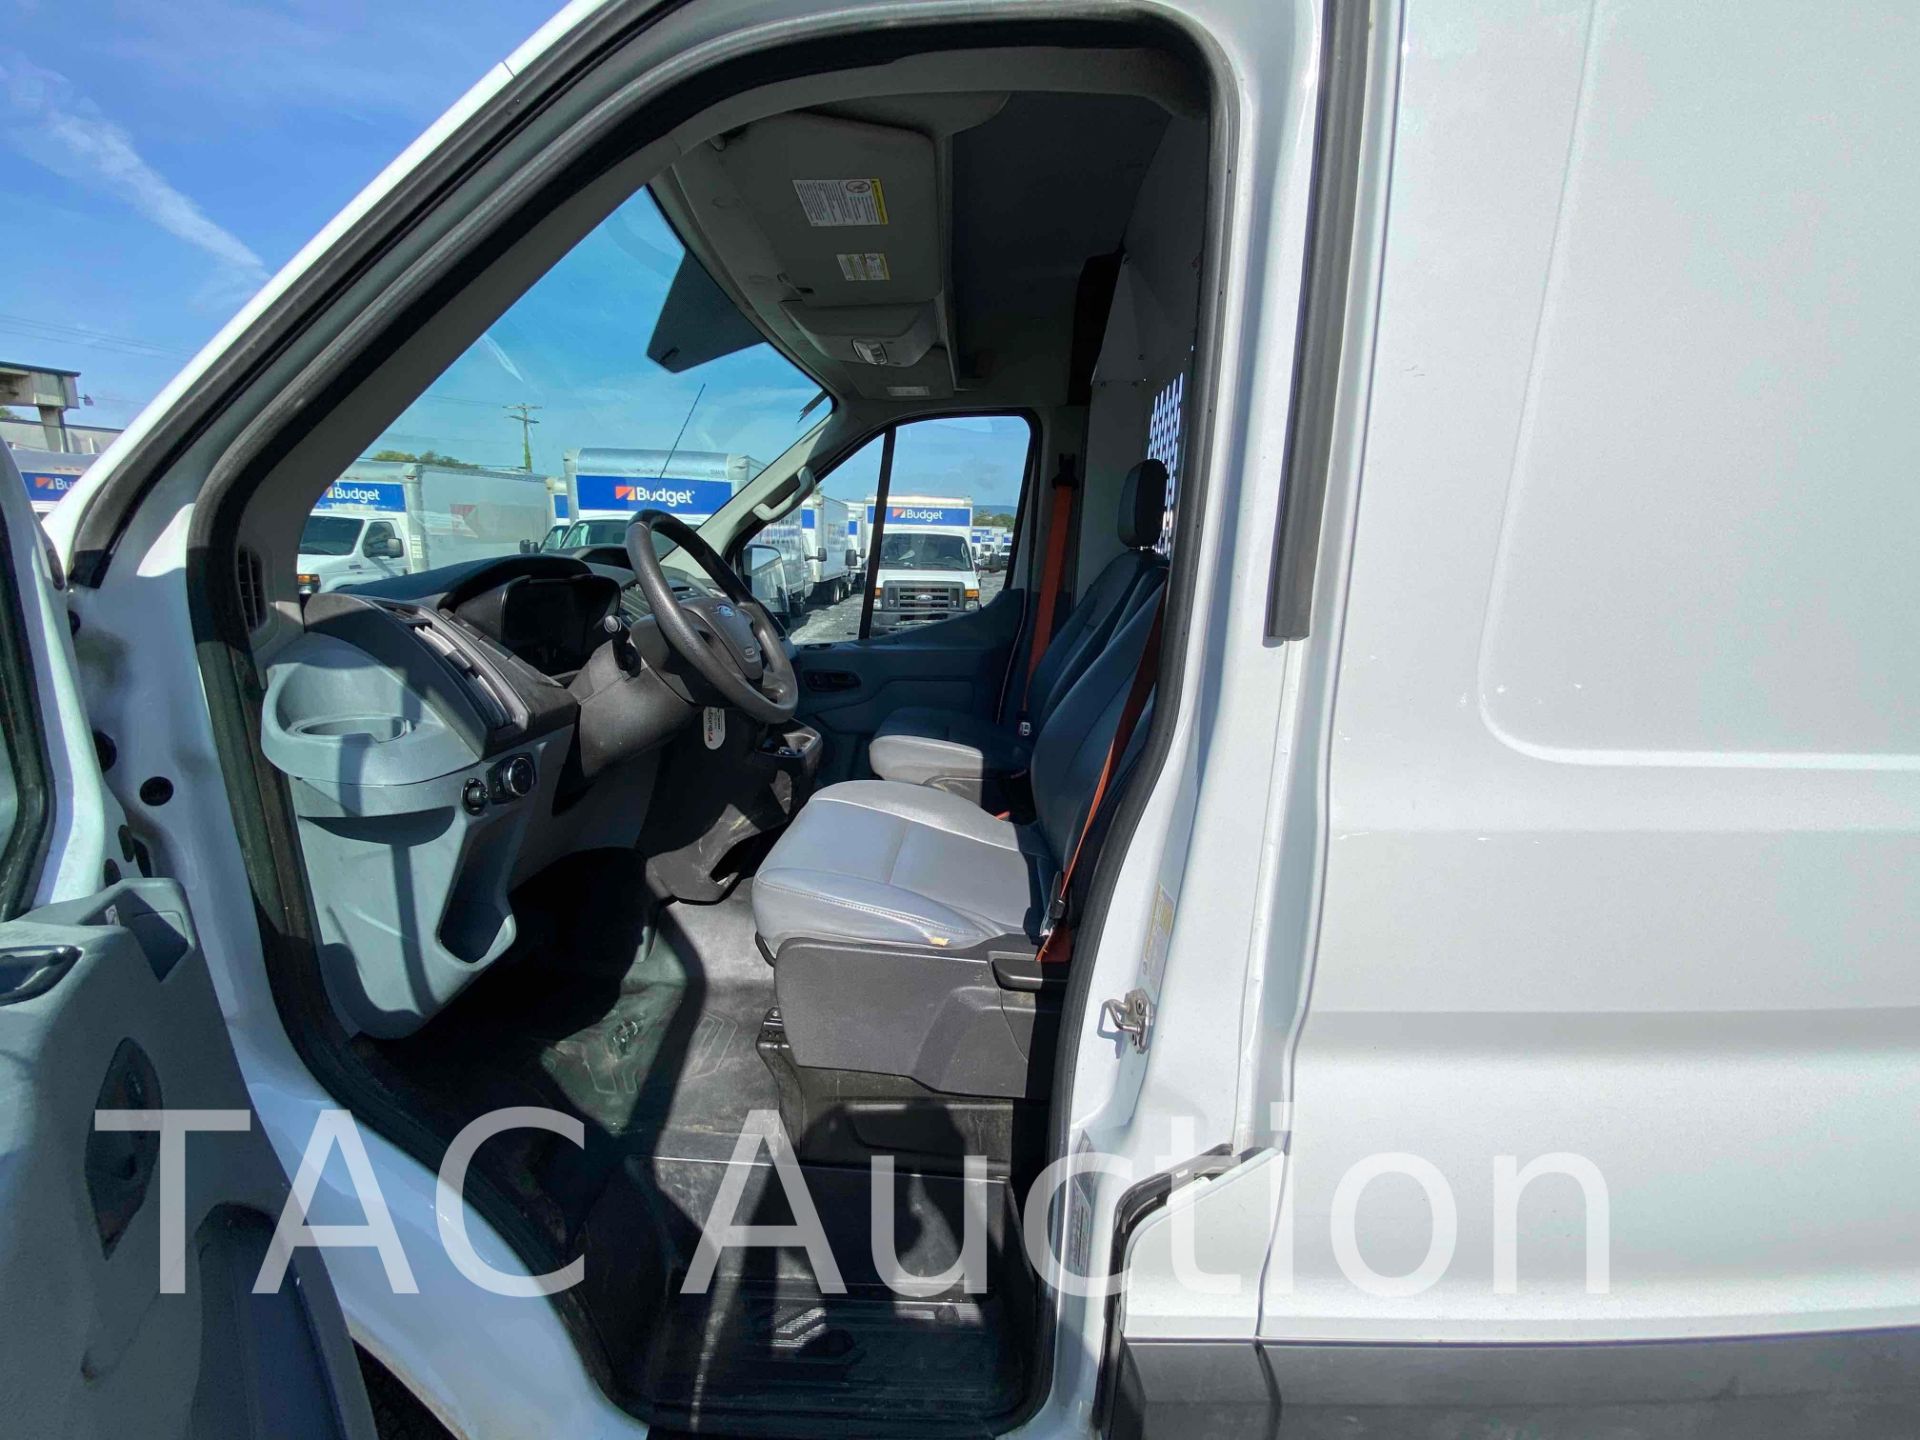 2019 Ford Transit 150 Cargo Van - Image 22 of 51